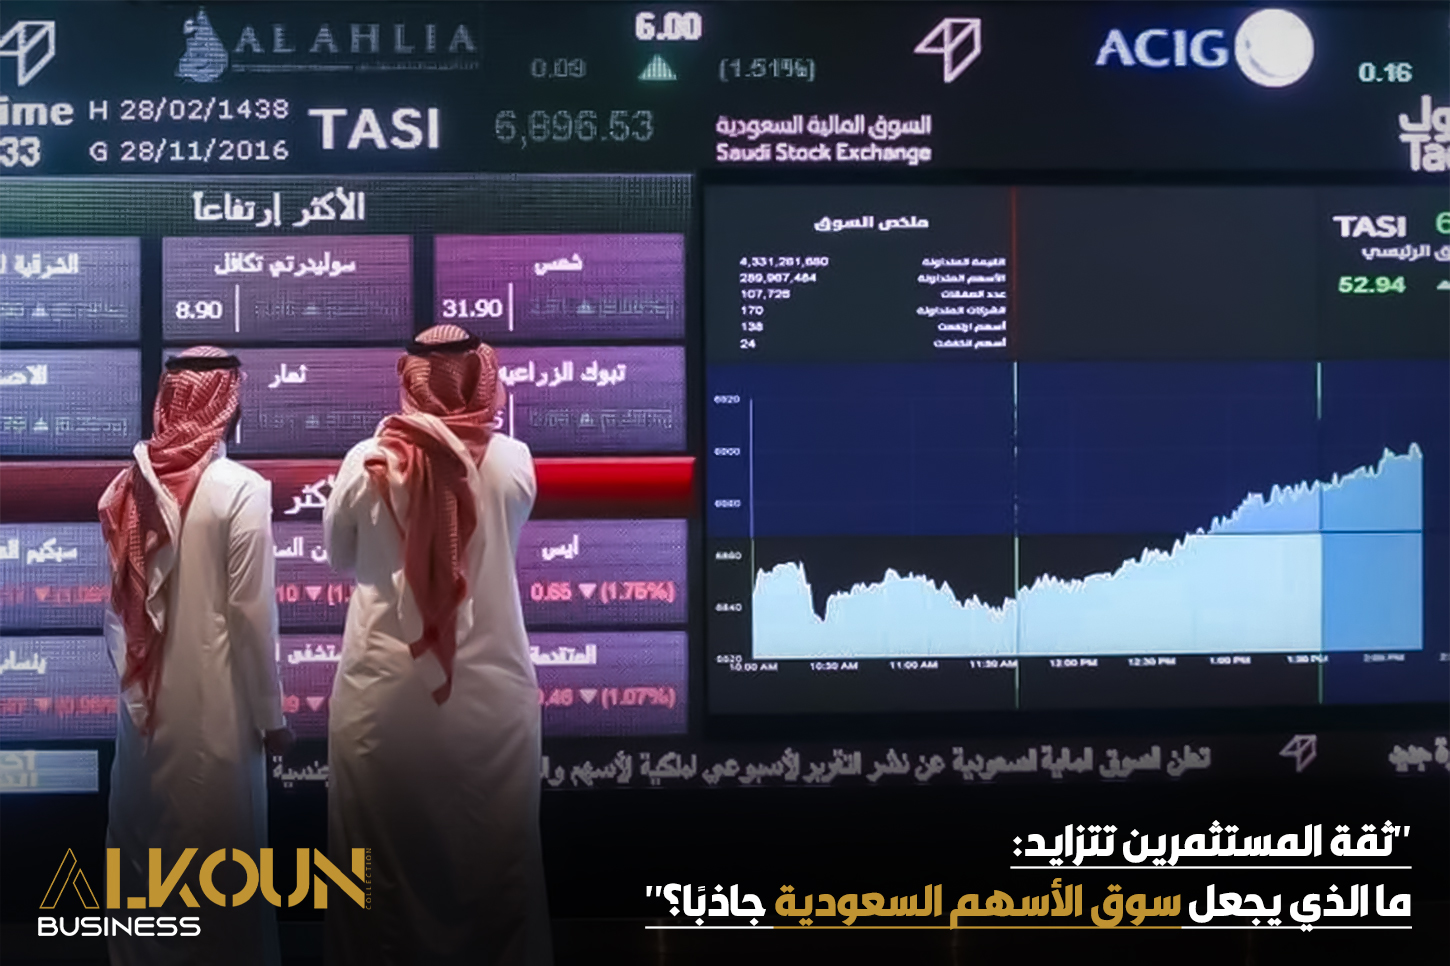 "ثقة المستثمرين تتزايد: ما الذي يجعل سوق الأسهم السعودية جاذبًا؟"